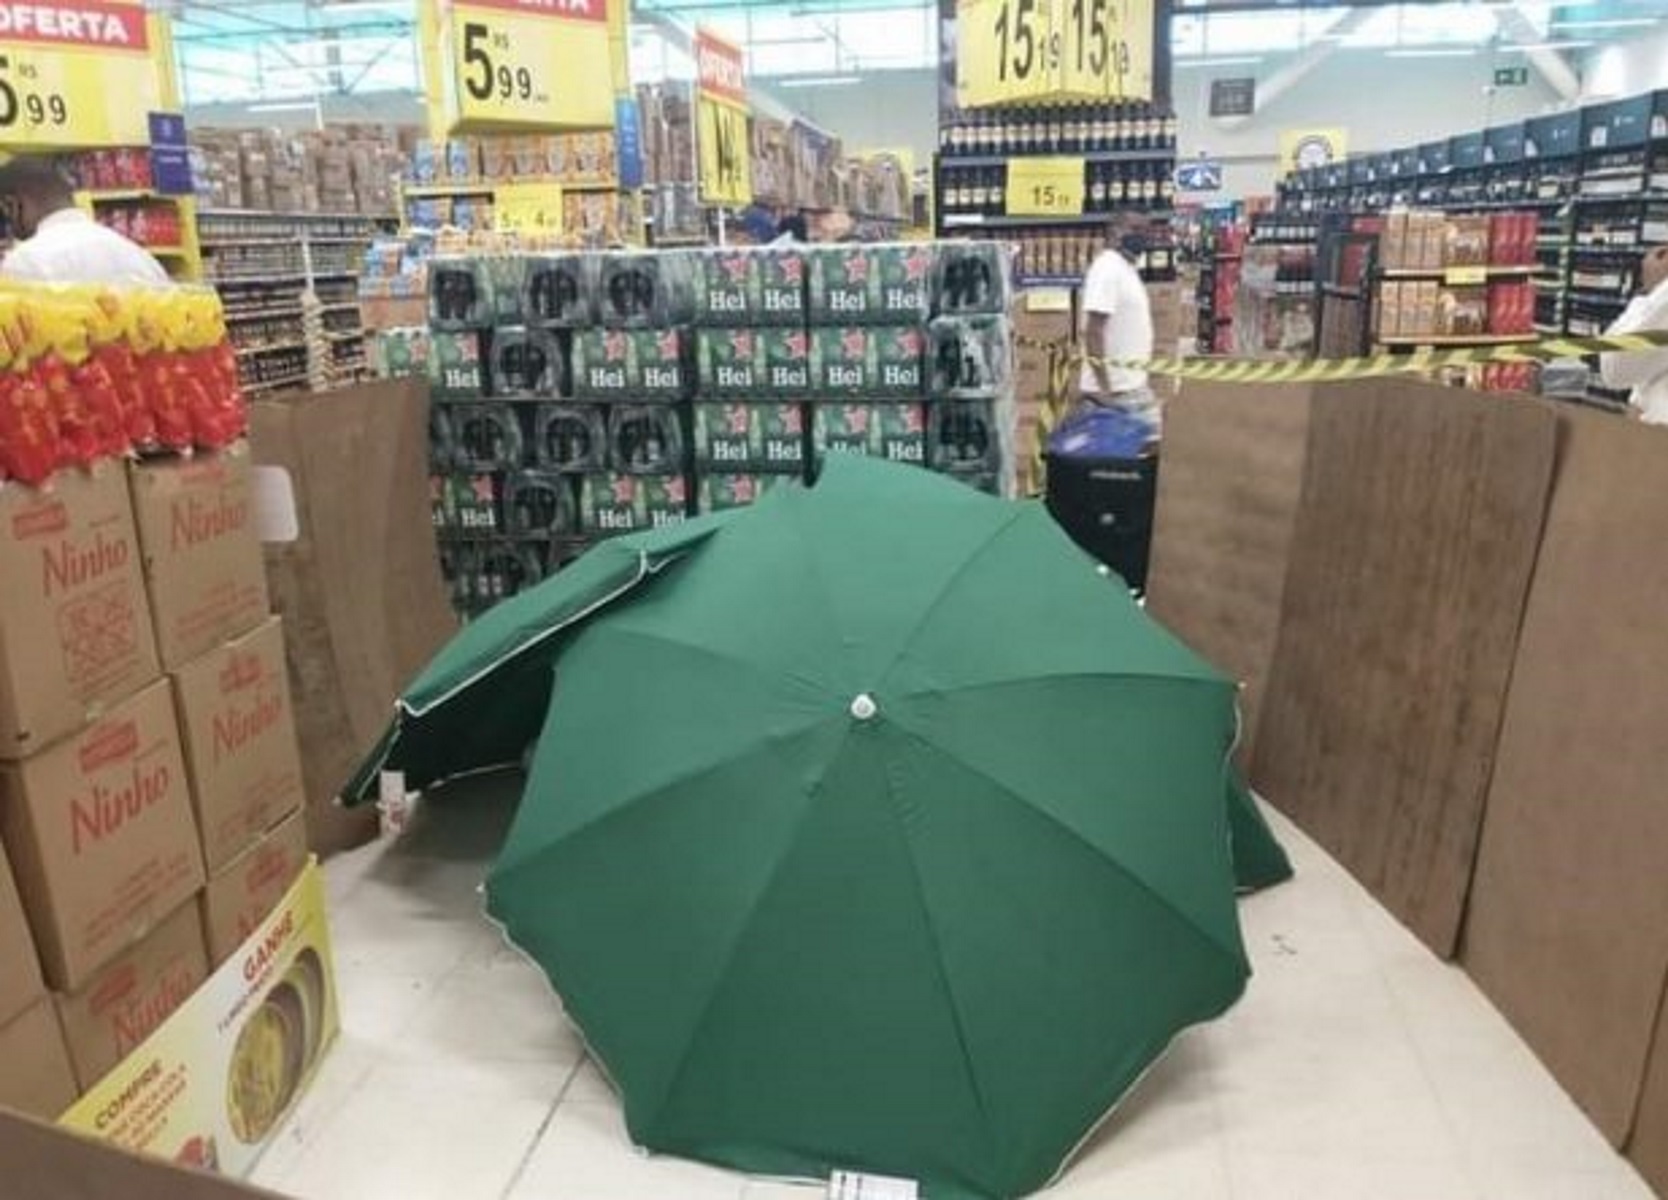 Εικόνες σοκ στη Βραζιλία: Άνδρας πέθανε σε σούπερ μάρκετ, τον σκέπασαν με ομπρέλες ενώ οι πελάτες ψώνιζαν